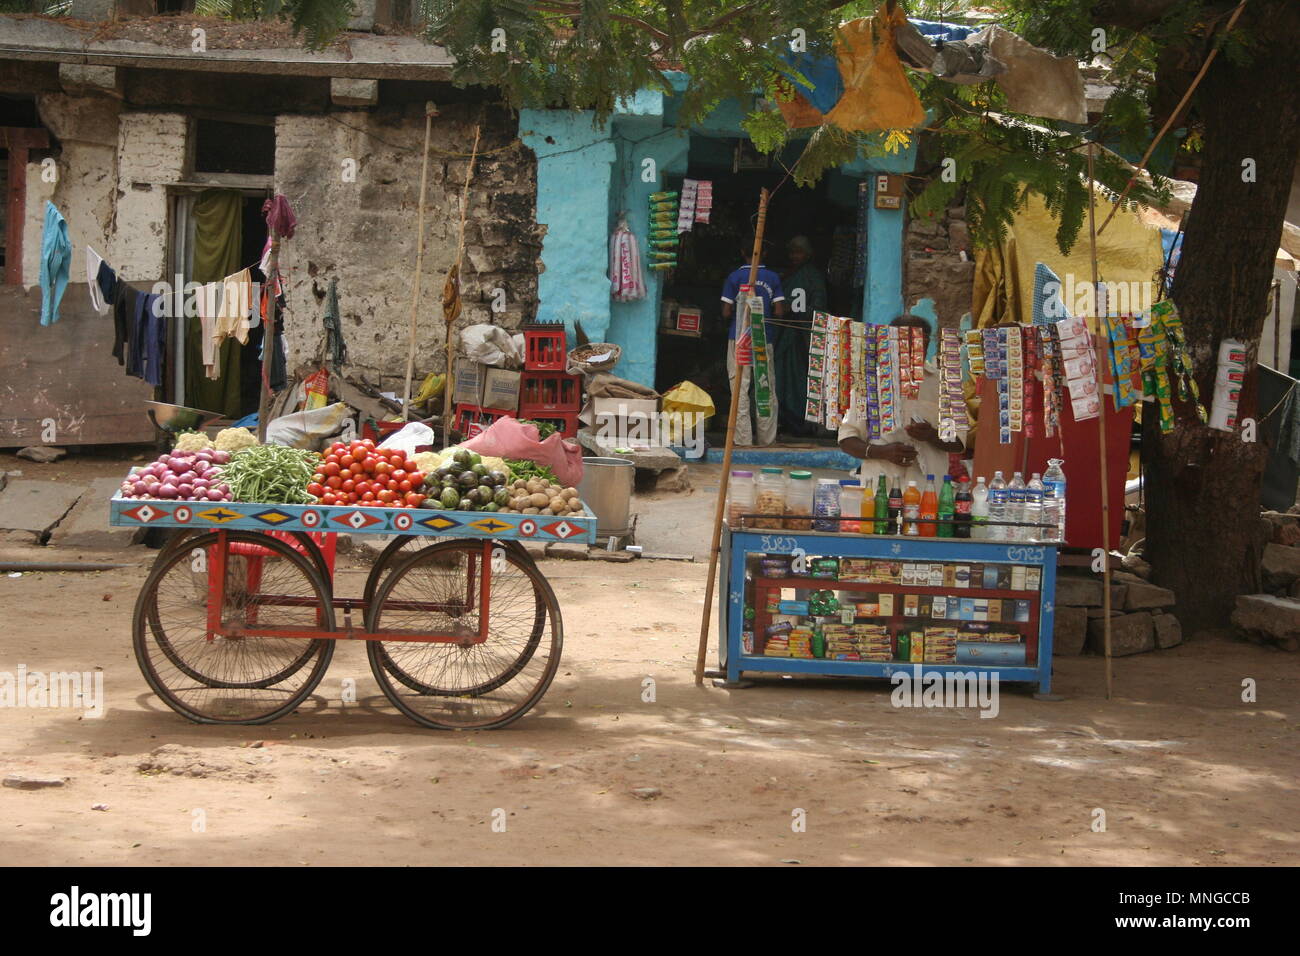 Panier de couleur vive la vente de fruits, légumes, jus de fruits et des bonbons, Hampi, Inde Banque D'Images